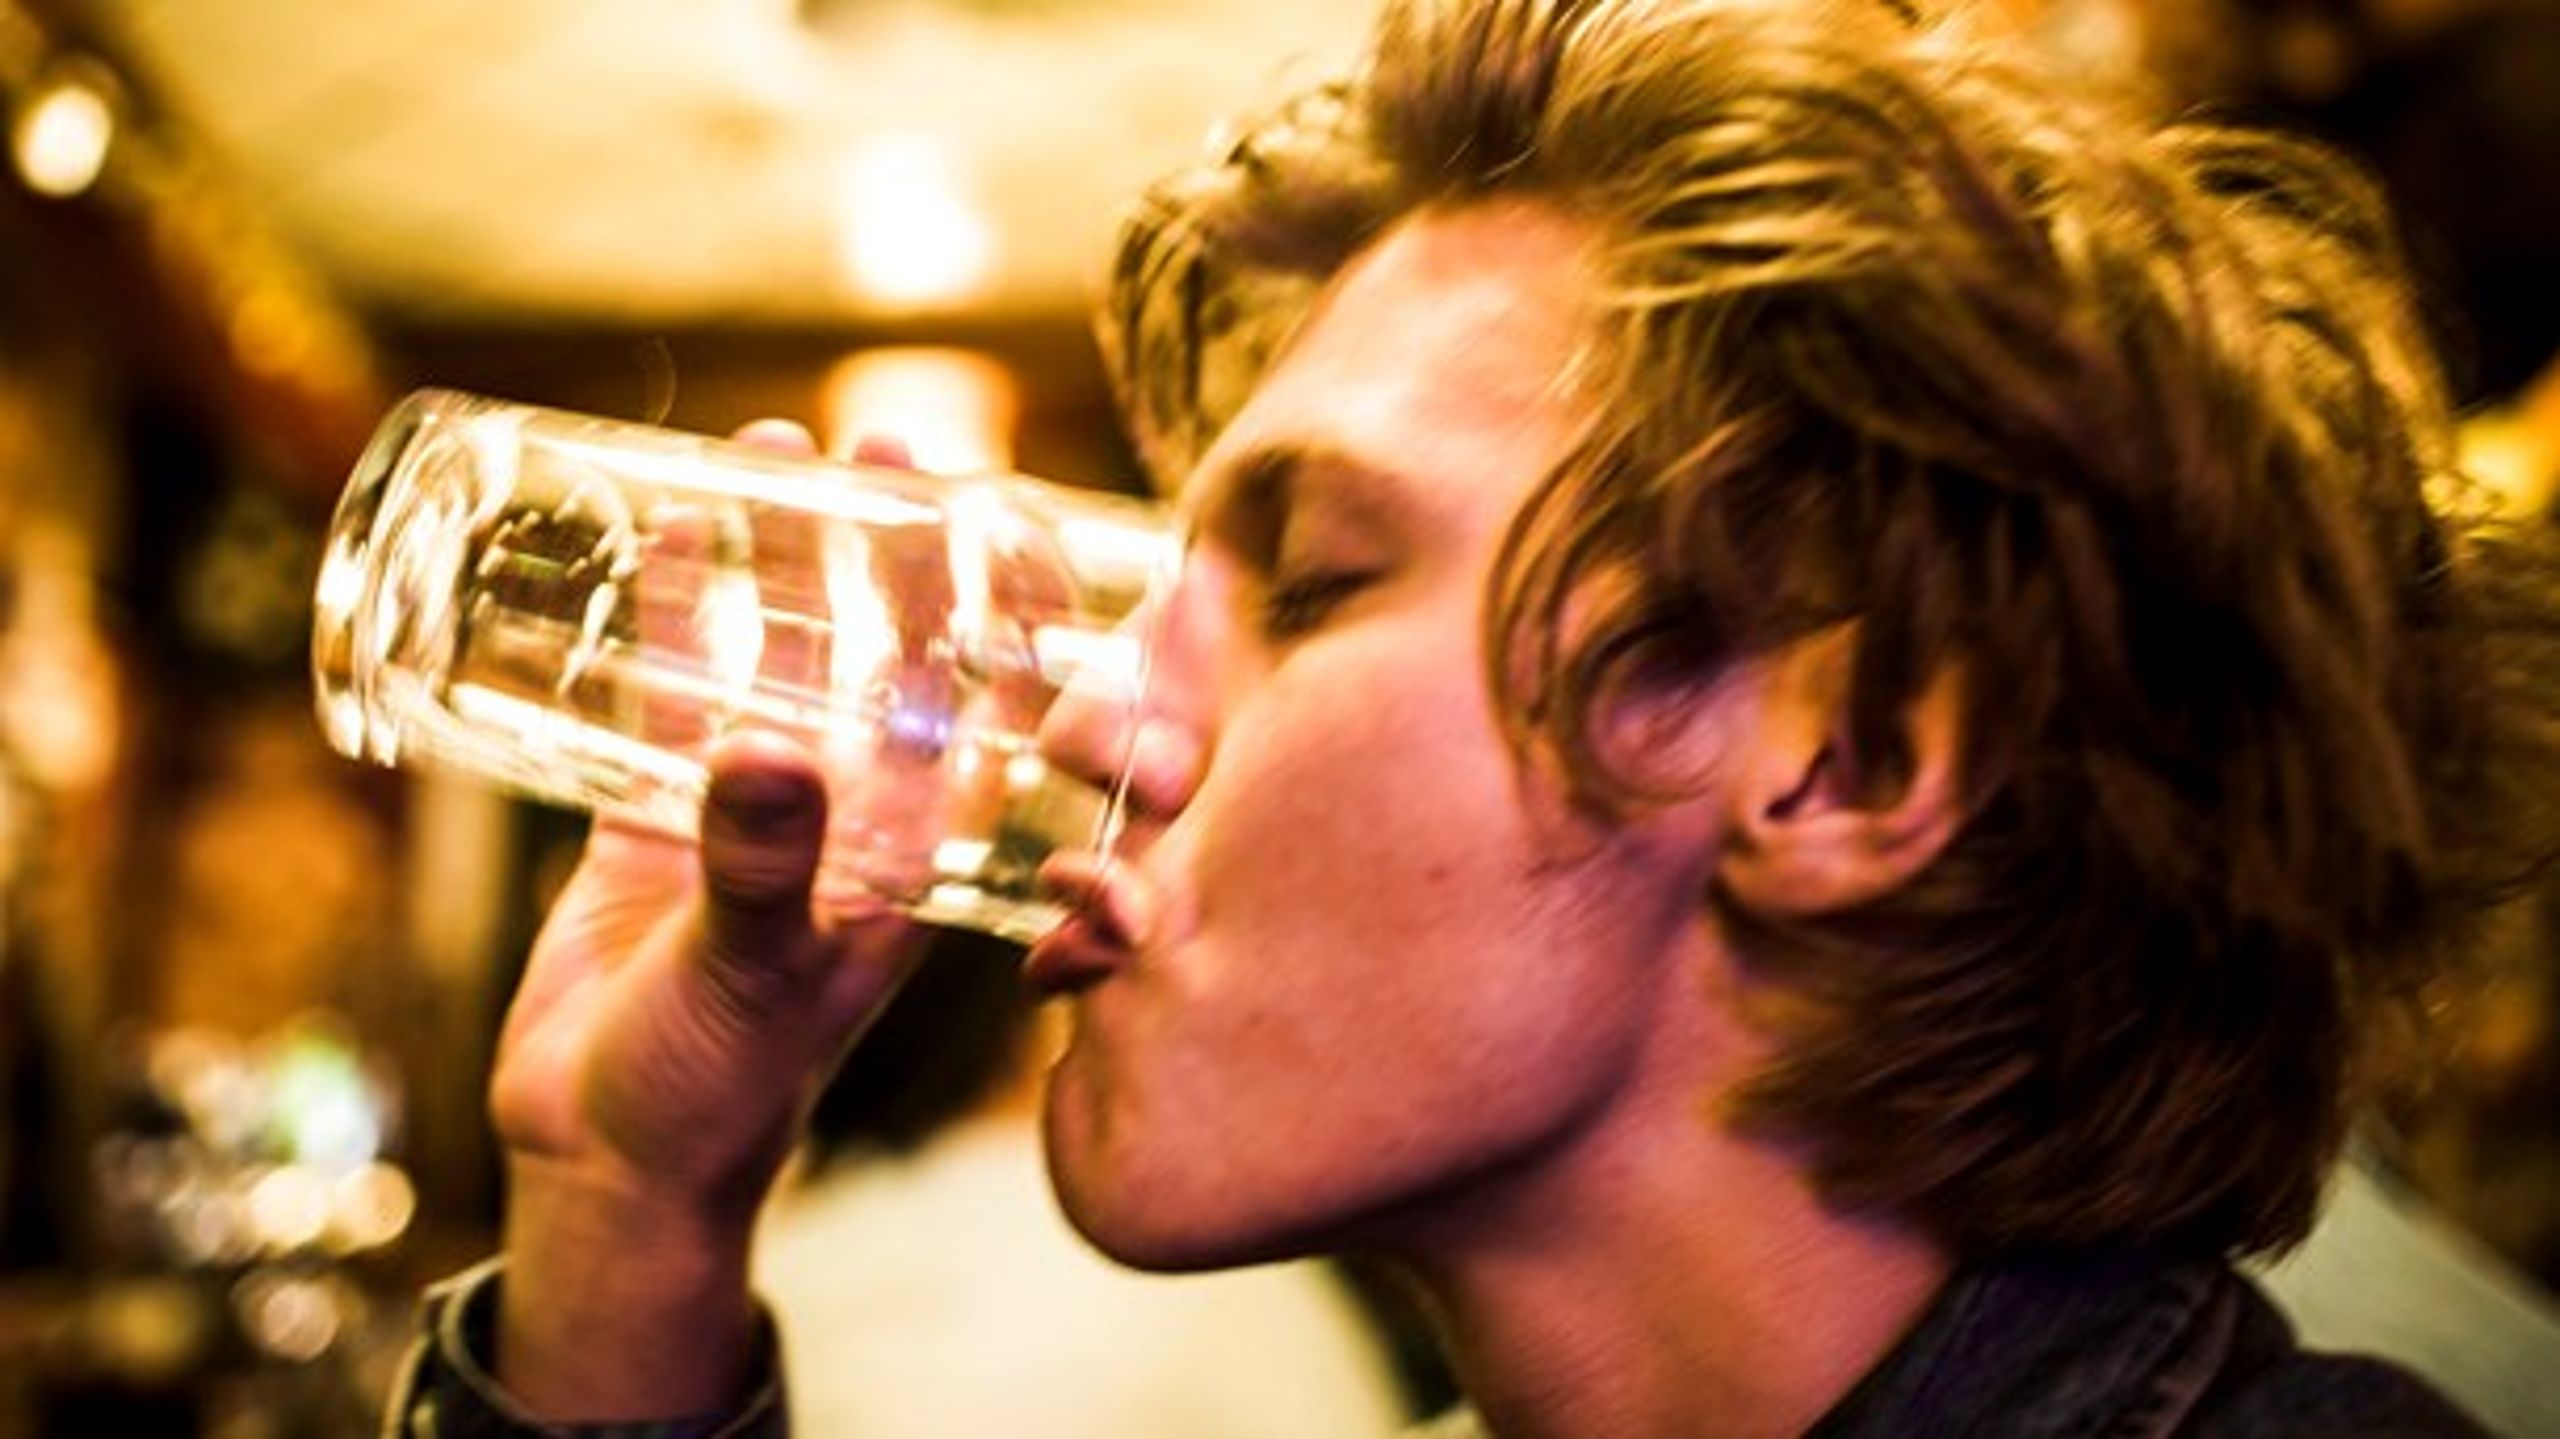 De danske unge drikker, til de er fulde. Og det bliver de ofte, skriver&nbsp;Peter Konow, Janne S. Tolstrup og Jakob J. Demant